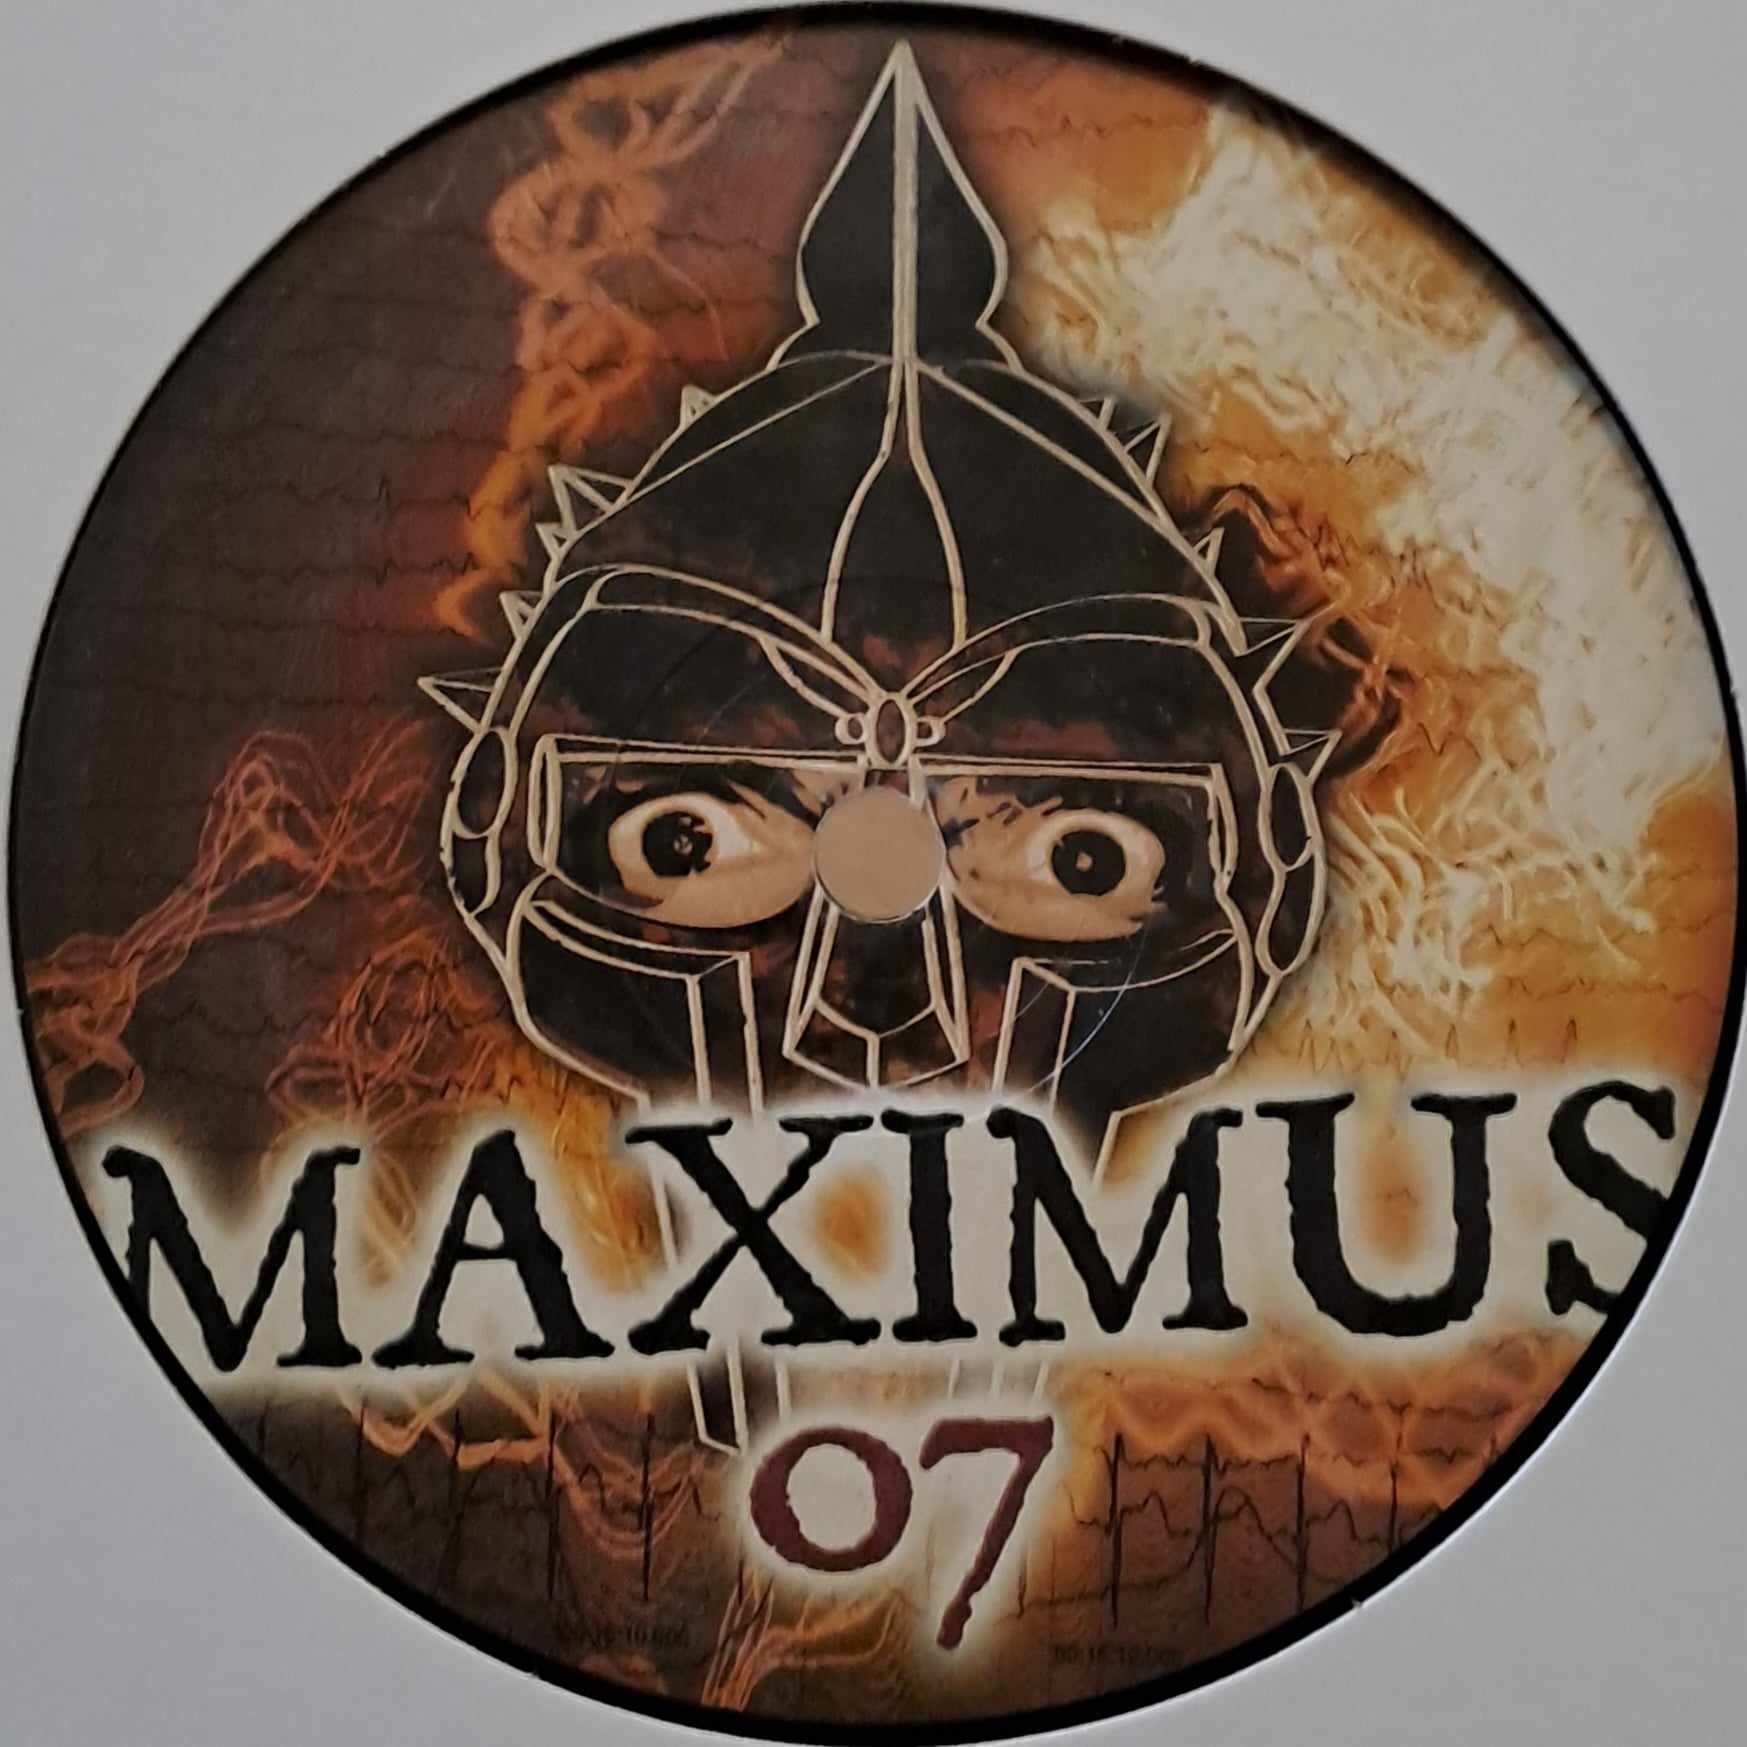 Maximus 07 - vinyle tribecore